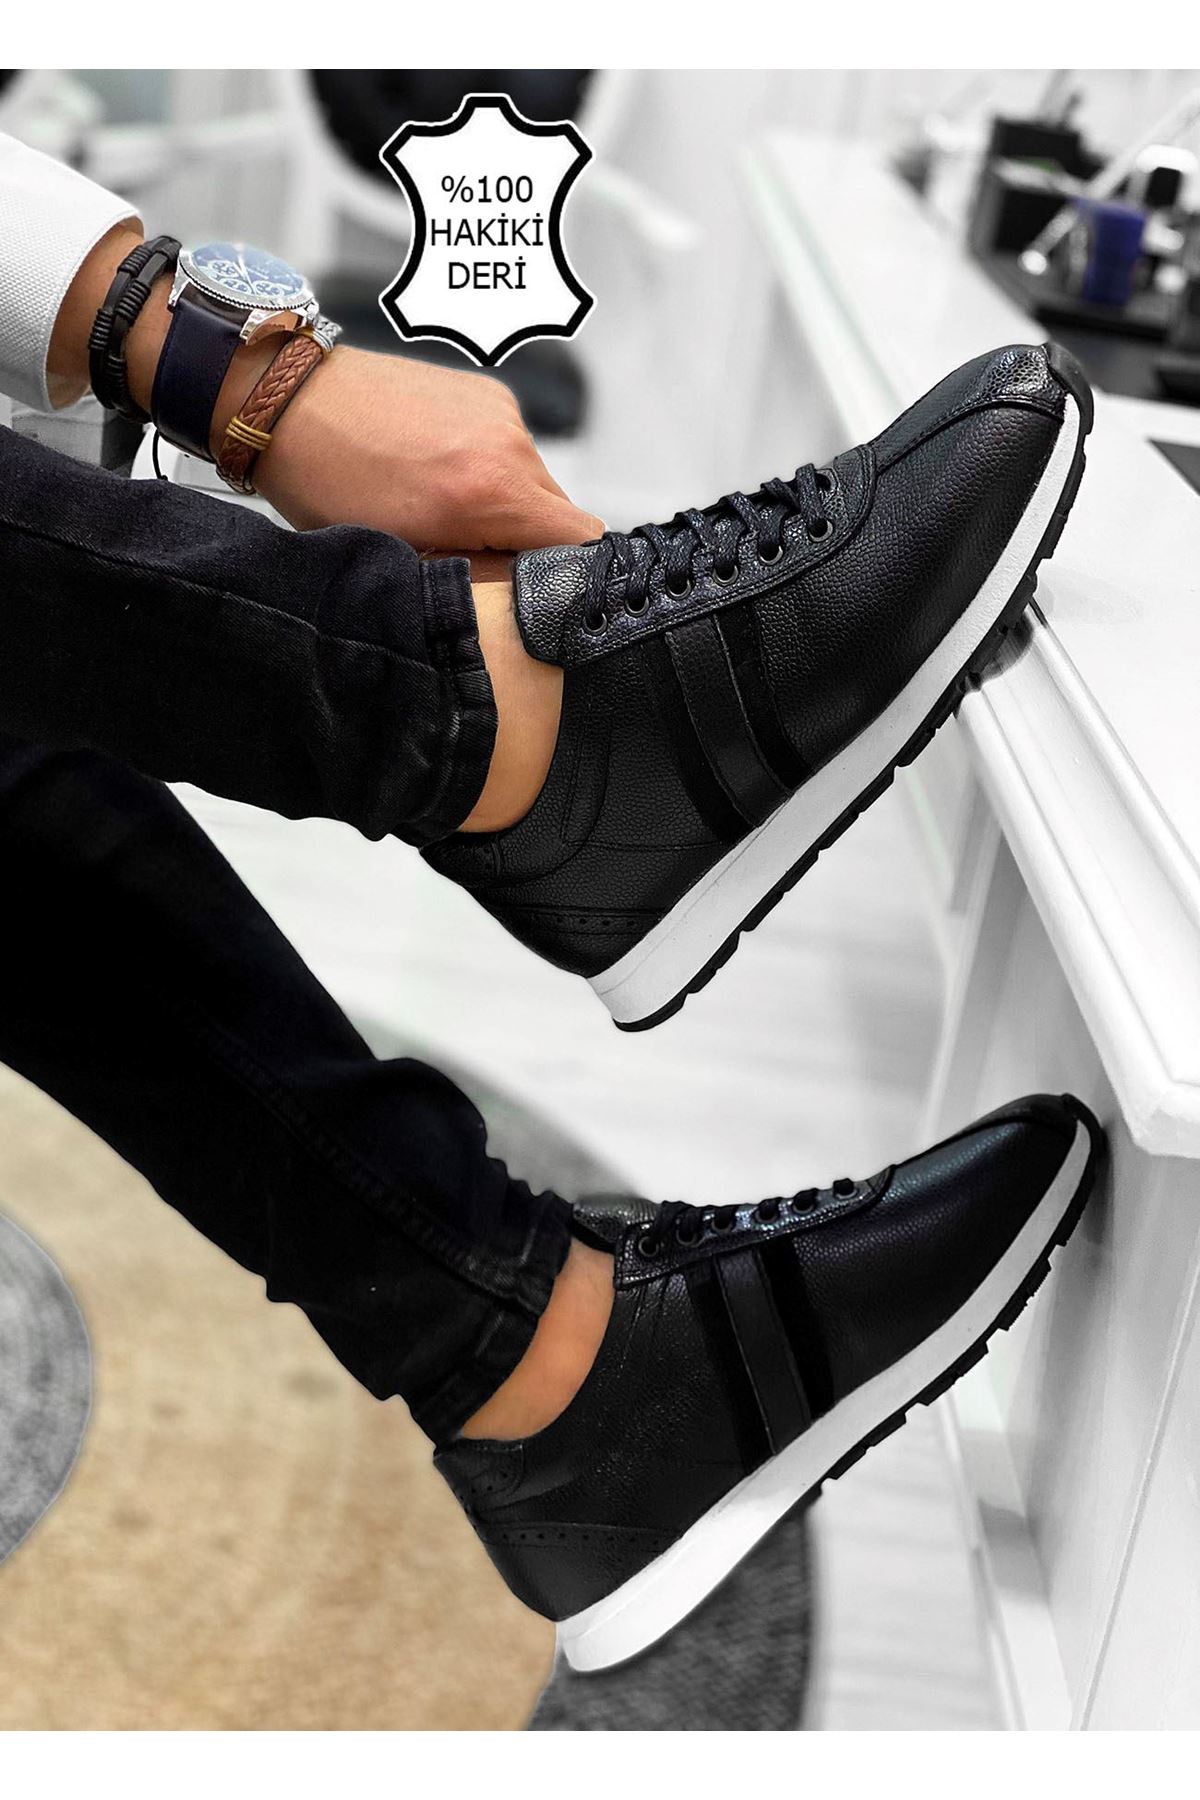 Boy Uzatan Hakiki Deri Gizli Topuklu Siyah Beyaz Çizgi Detay Erkek Spor Ayakkabı MYY350